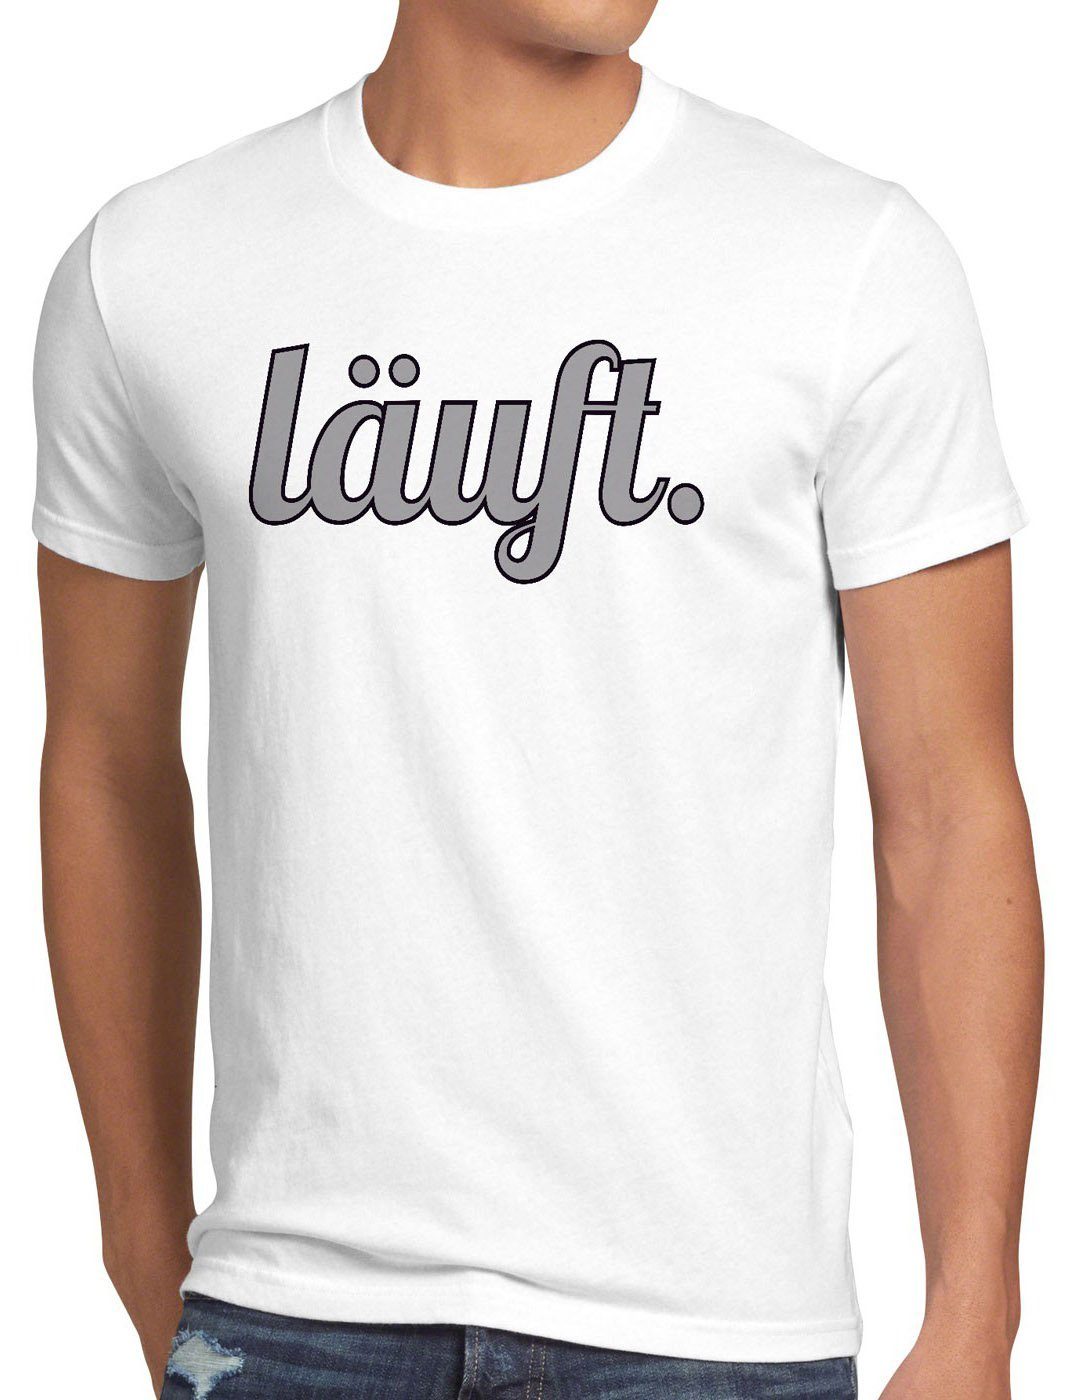 style3 Print-Shirt Herren läuft T-Shirt Funshirt Spruchshirt bei kult meme Shirt Fun top mir dir weiß